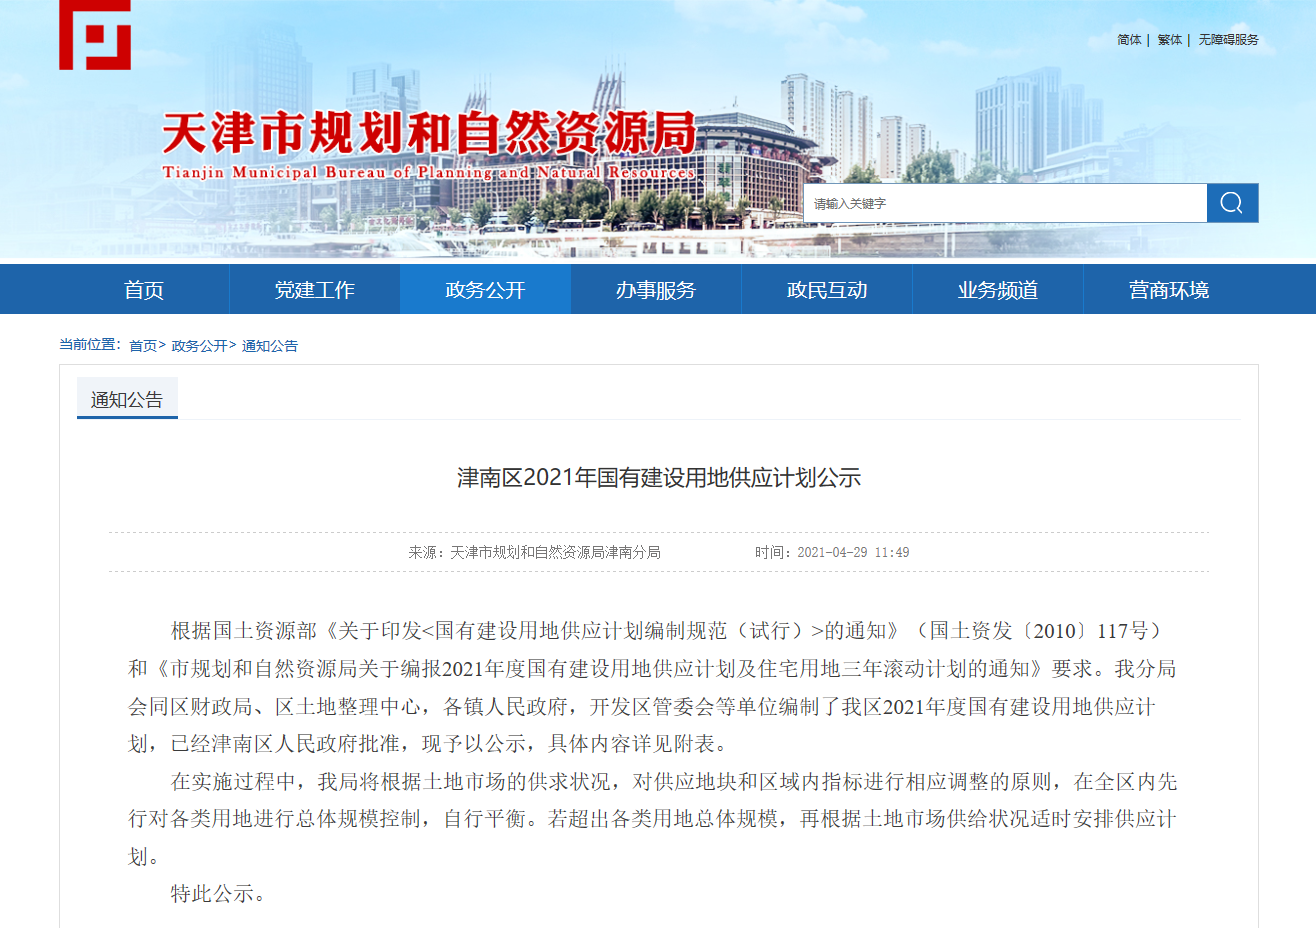 津南区2021年国有建设用地供应计划公示发布-中国网地产